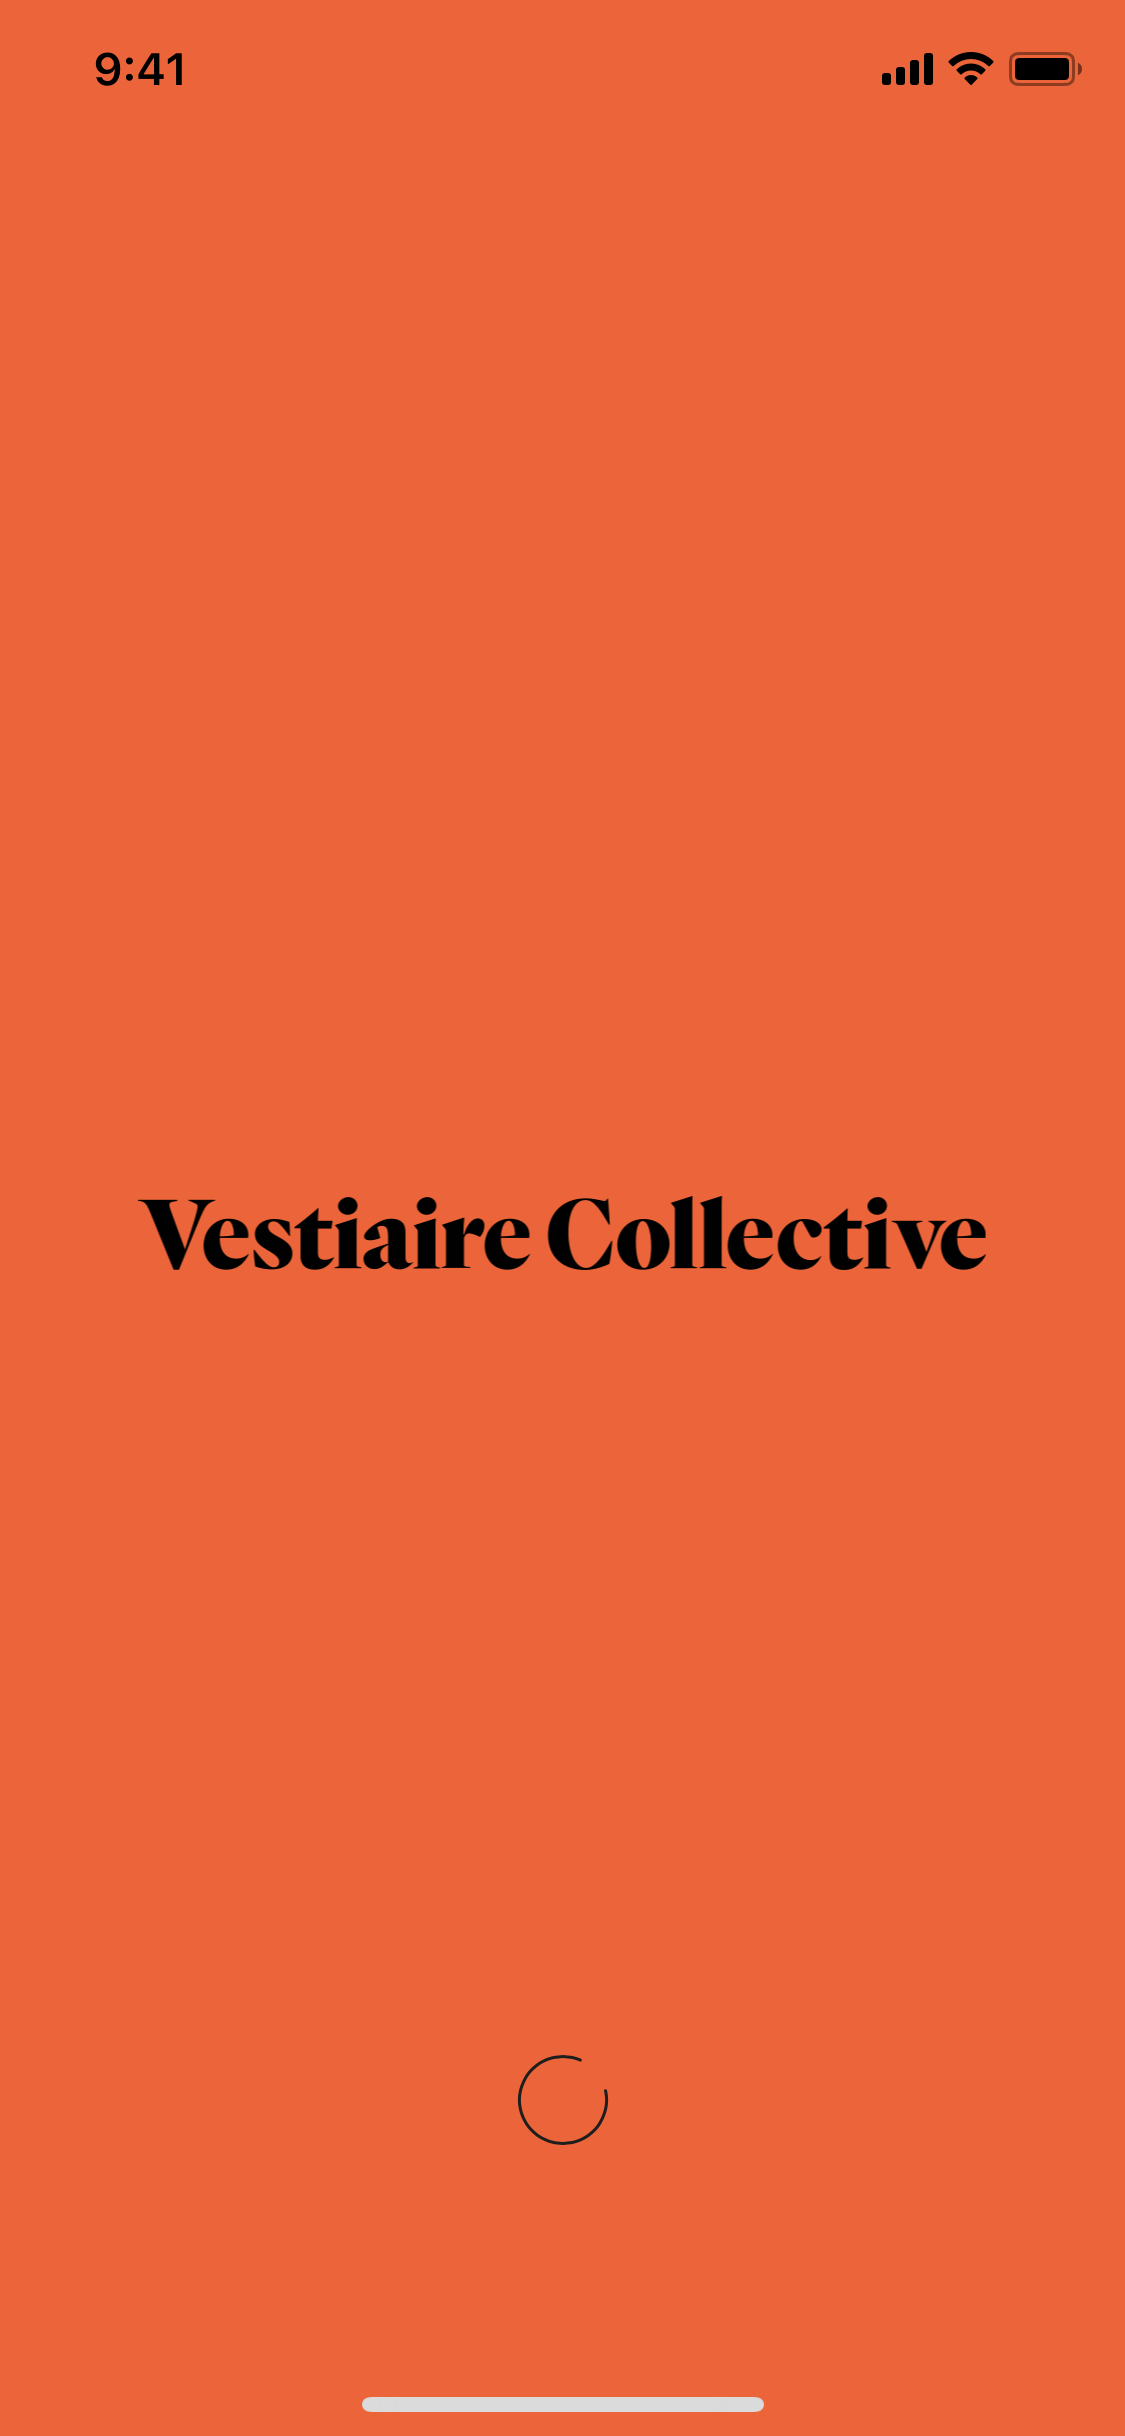 Vestiaire Collective iOS